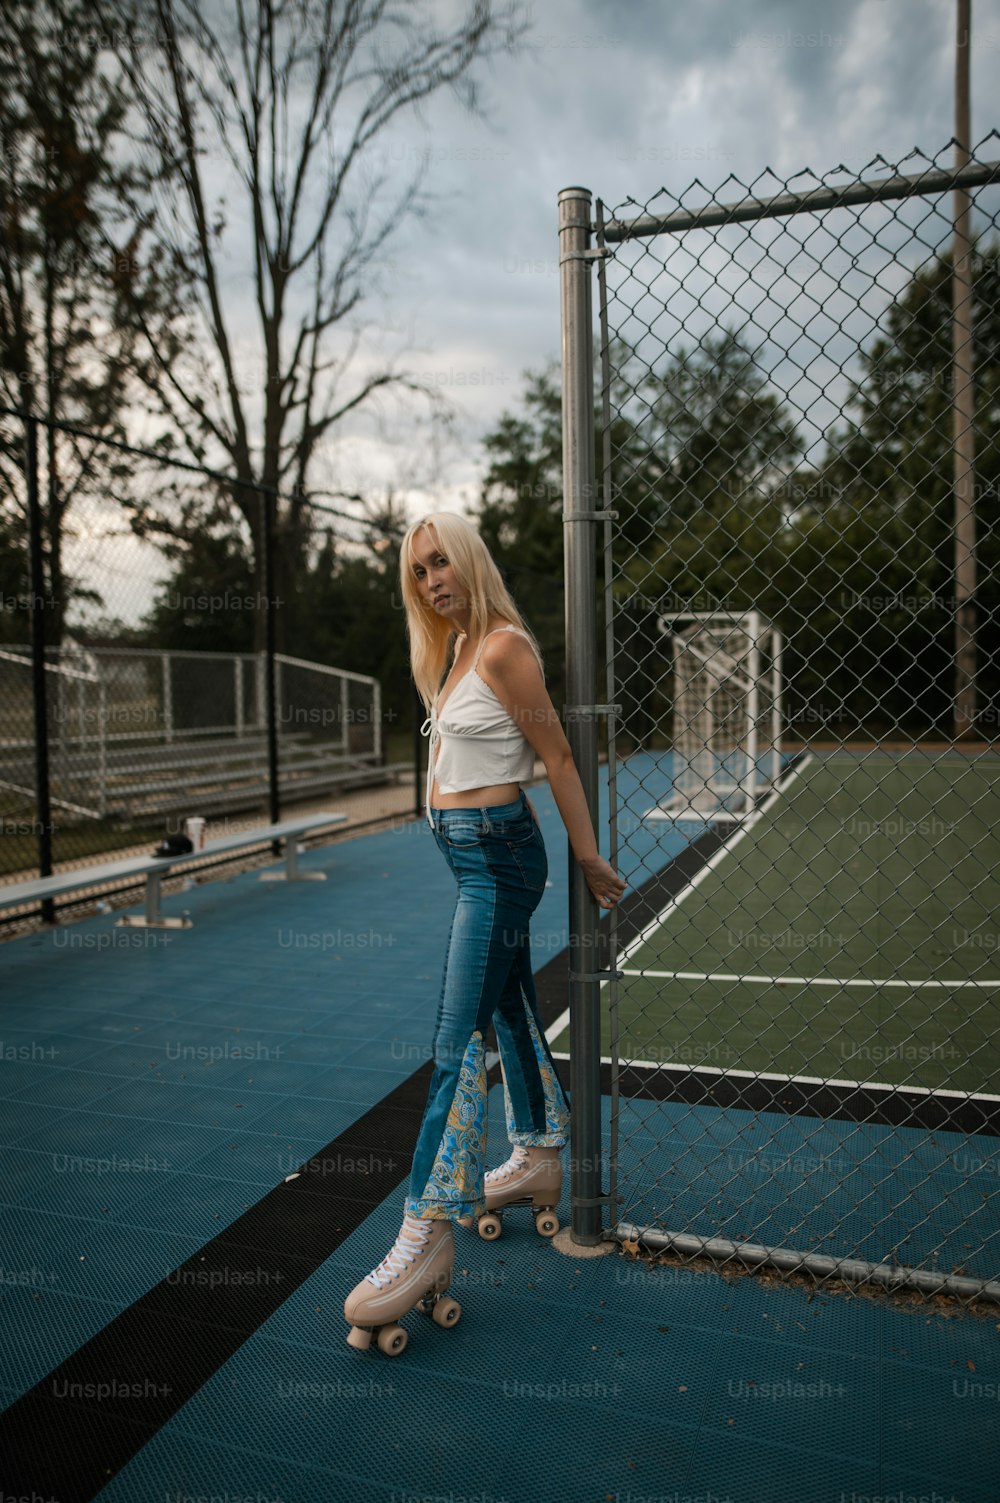 Una donna in piedi su uno skateboard su un campo da tennis